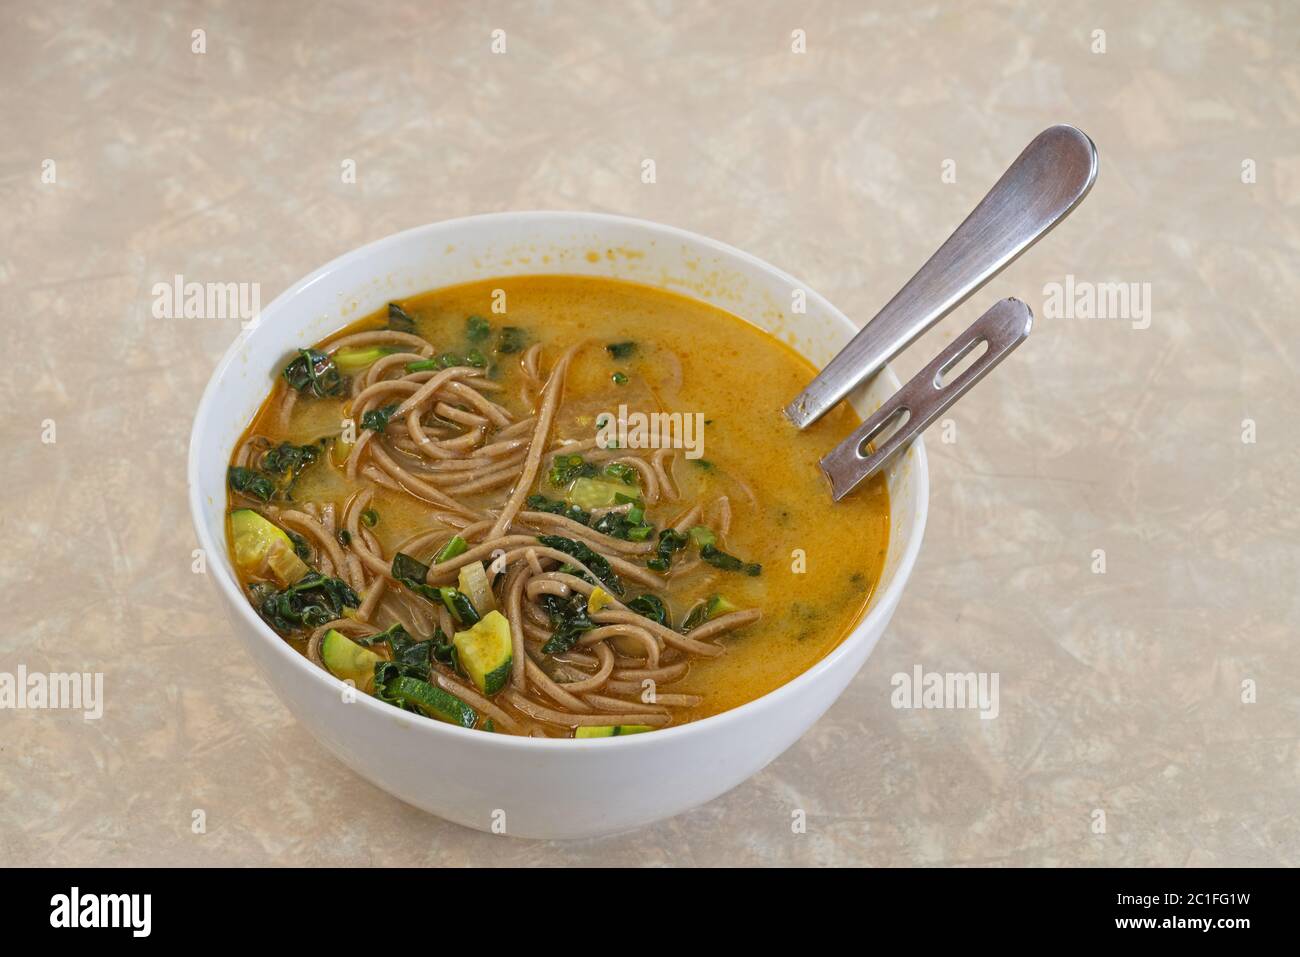 Schüssel mit hausgemachter Suppe mit reichhaltigem Brühgemüse und Soba-Nudeln Stockfoto